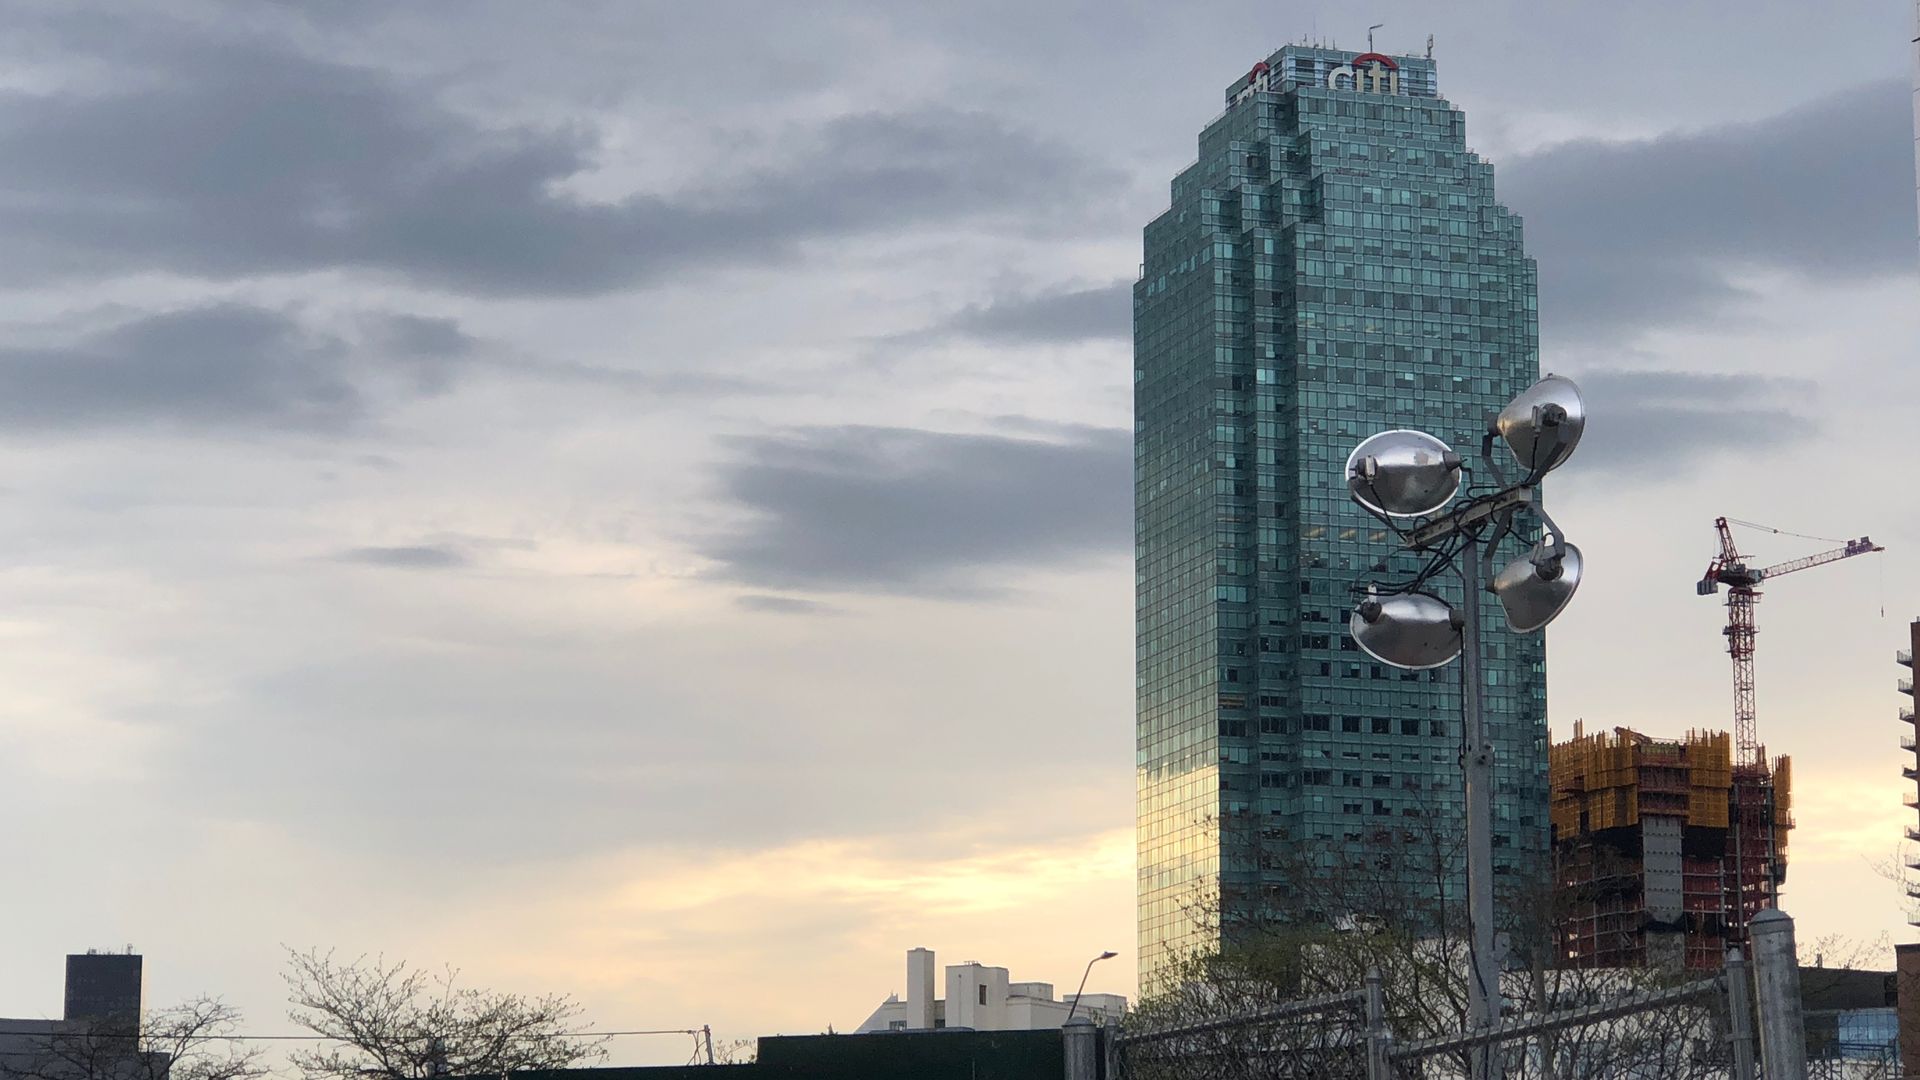 A glass skyscraper against a sunset